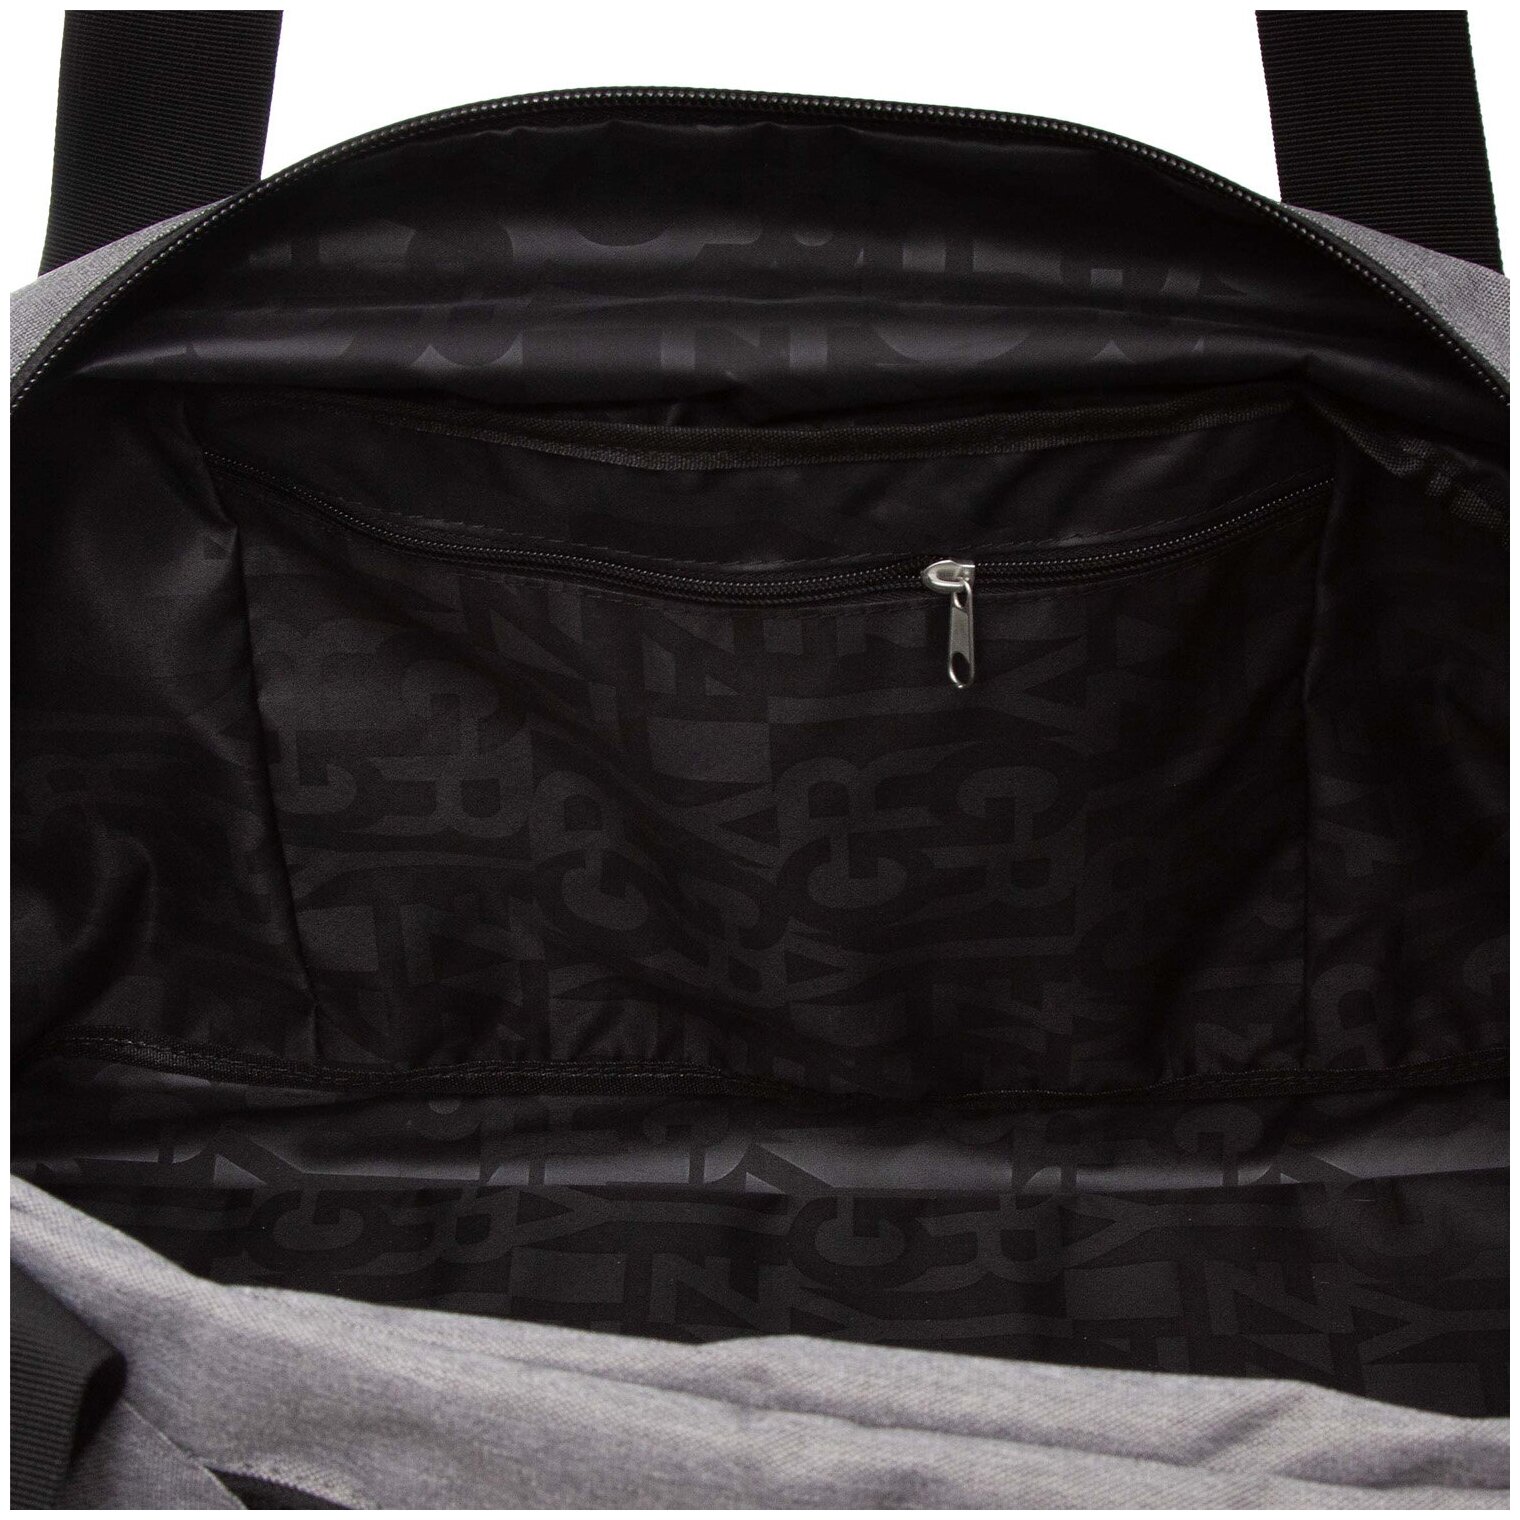 Универсальная мужская спортивная сумка для спорта и путешествий: компактная и вместительная TD-25-2/1 - фотография № 6